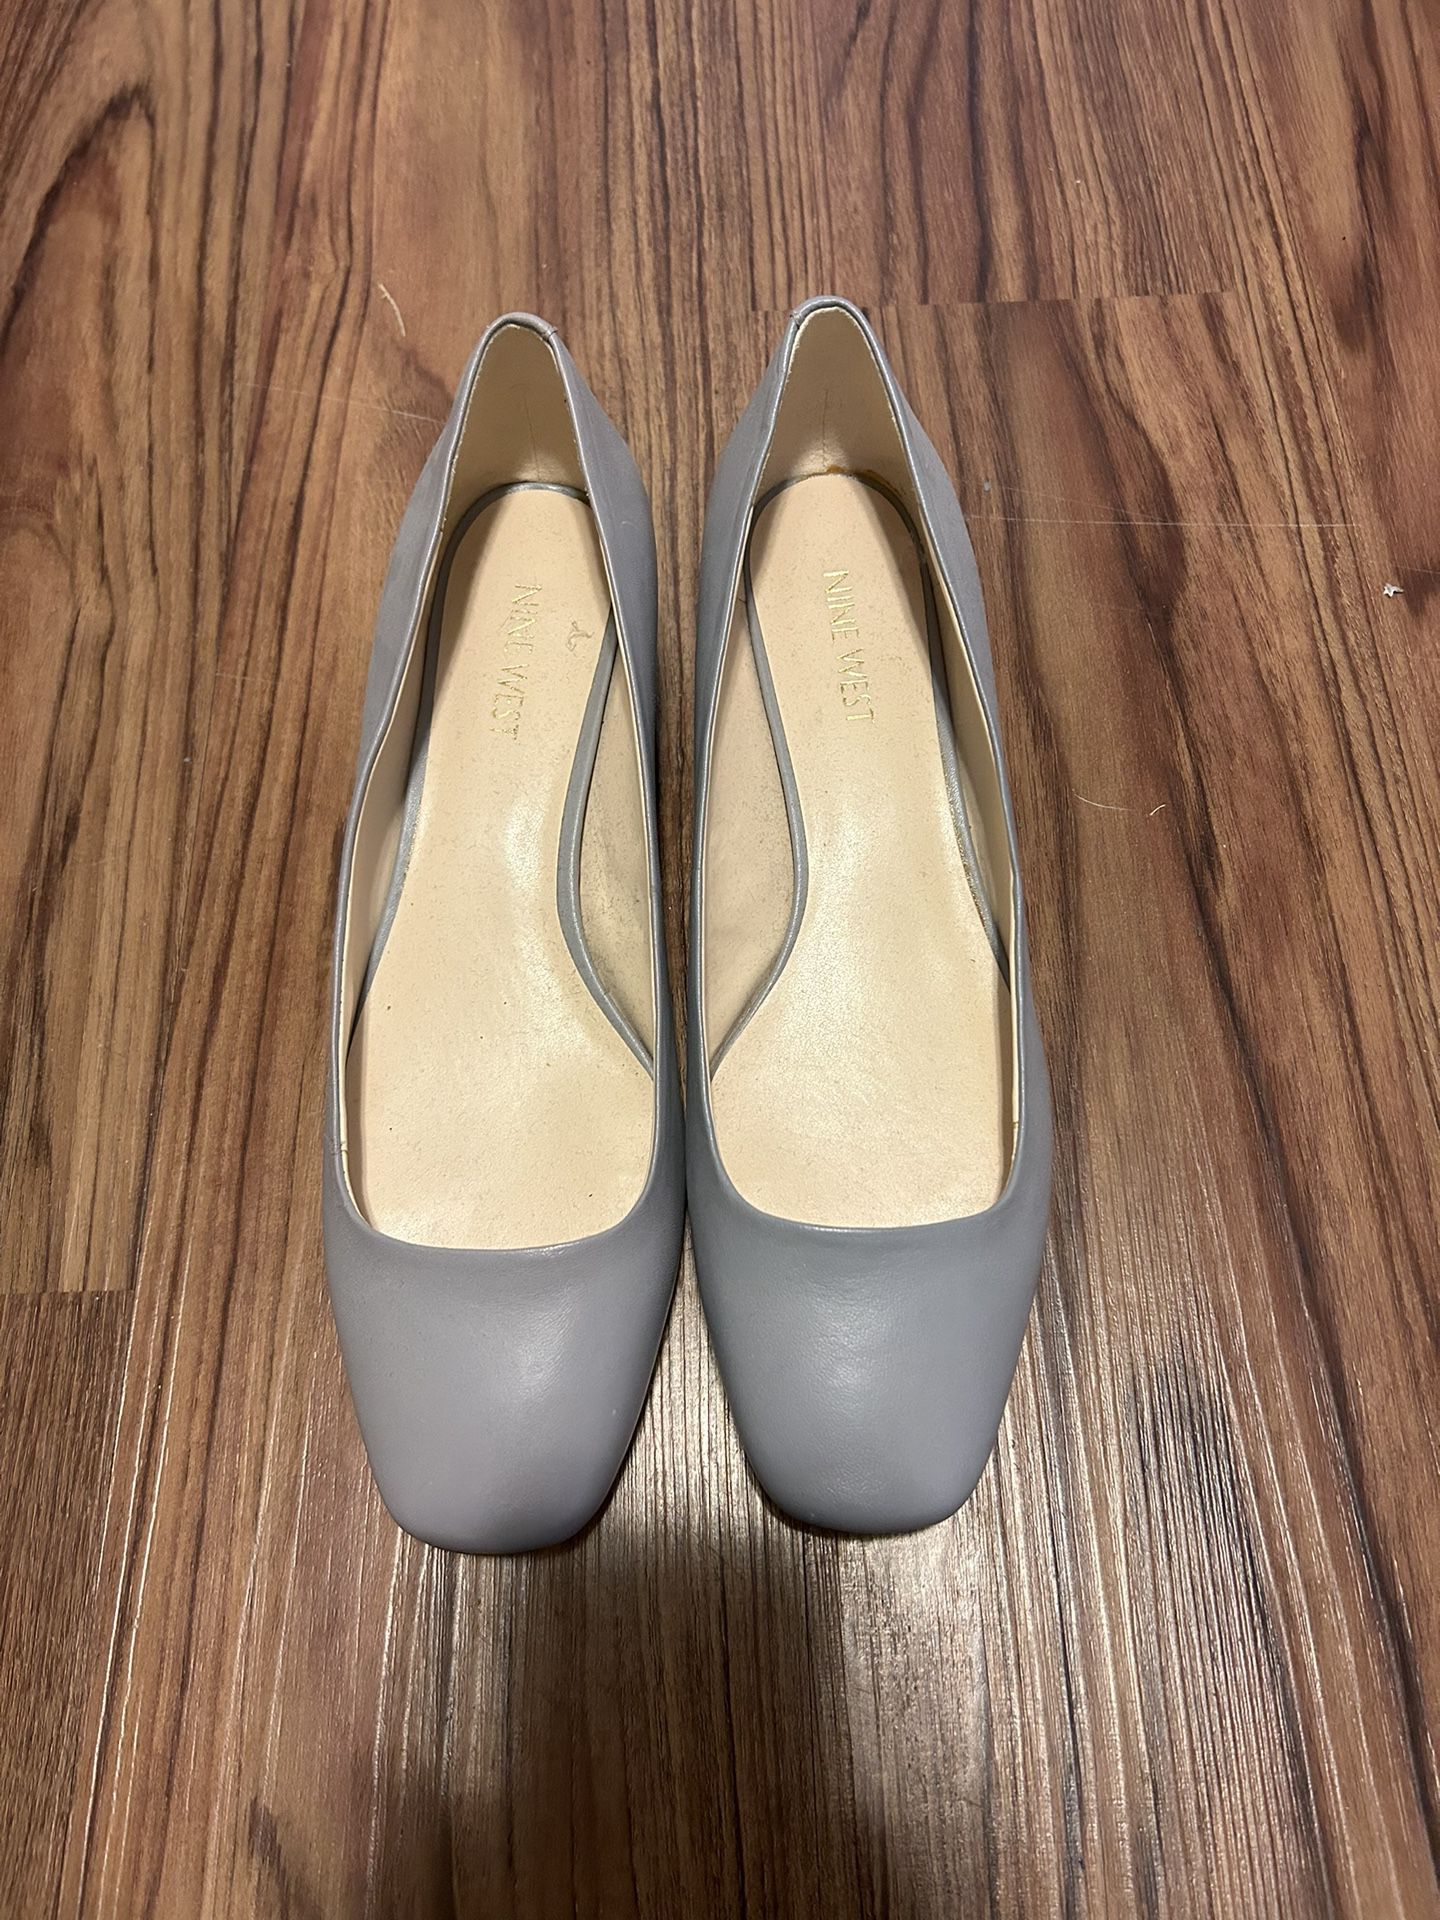 Nine West Women’s Dress Shoes Size 8.5